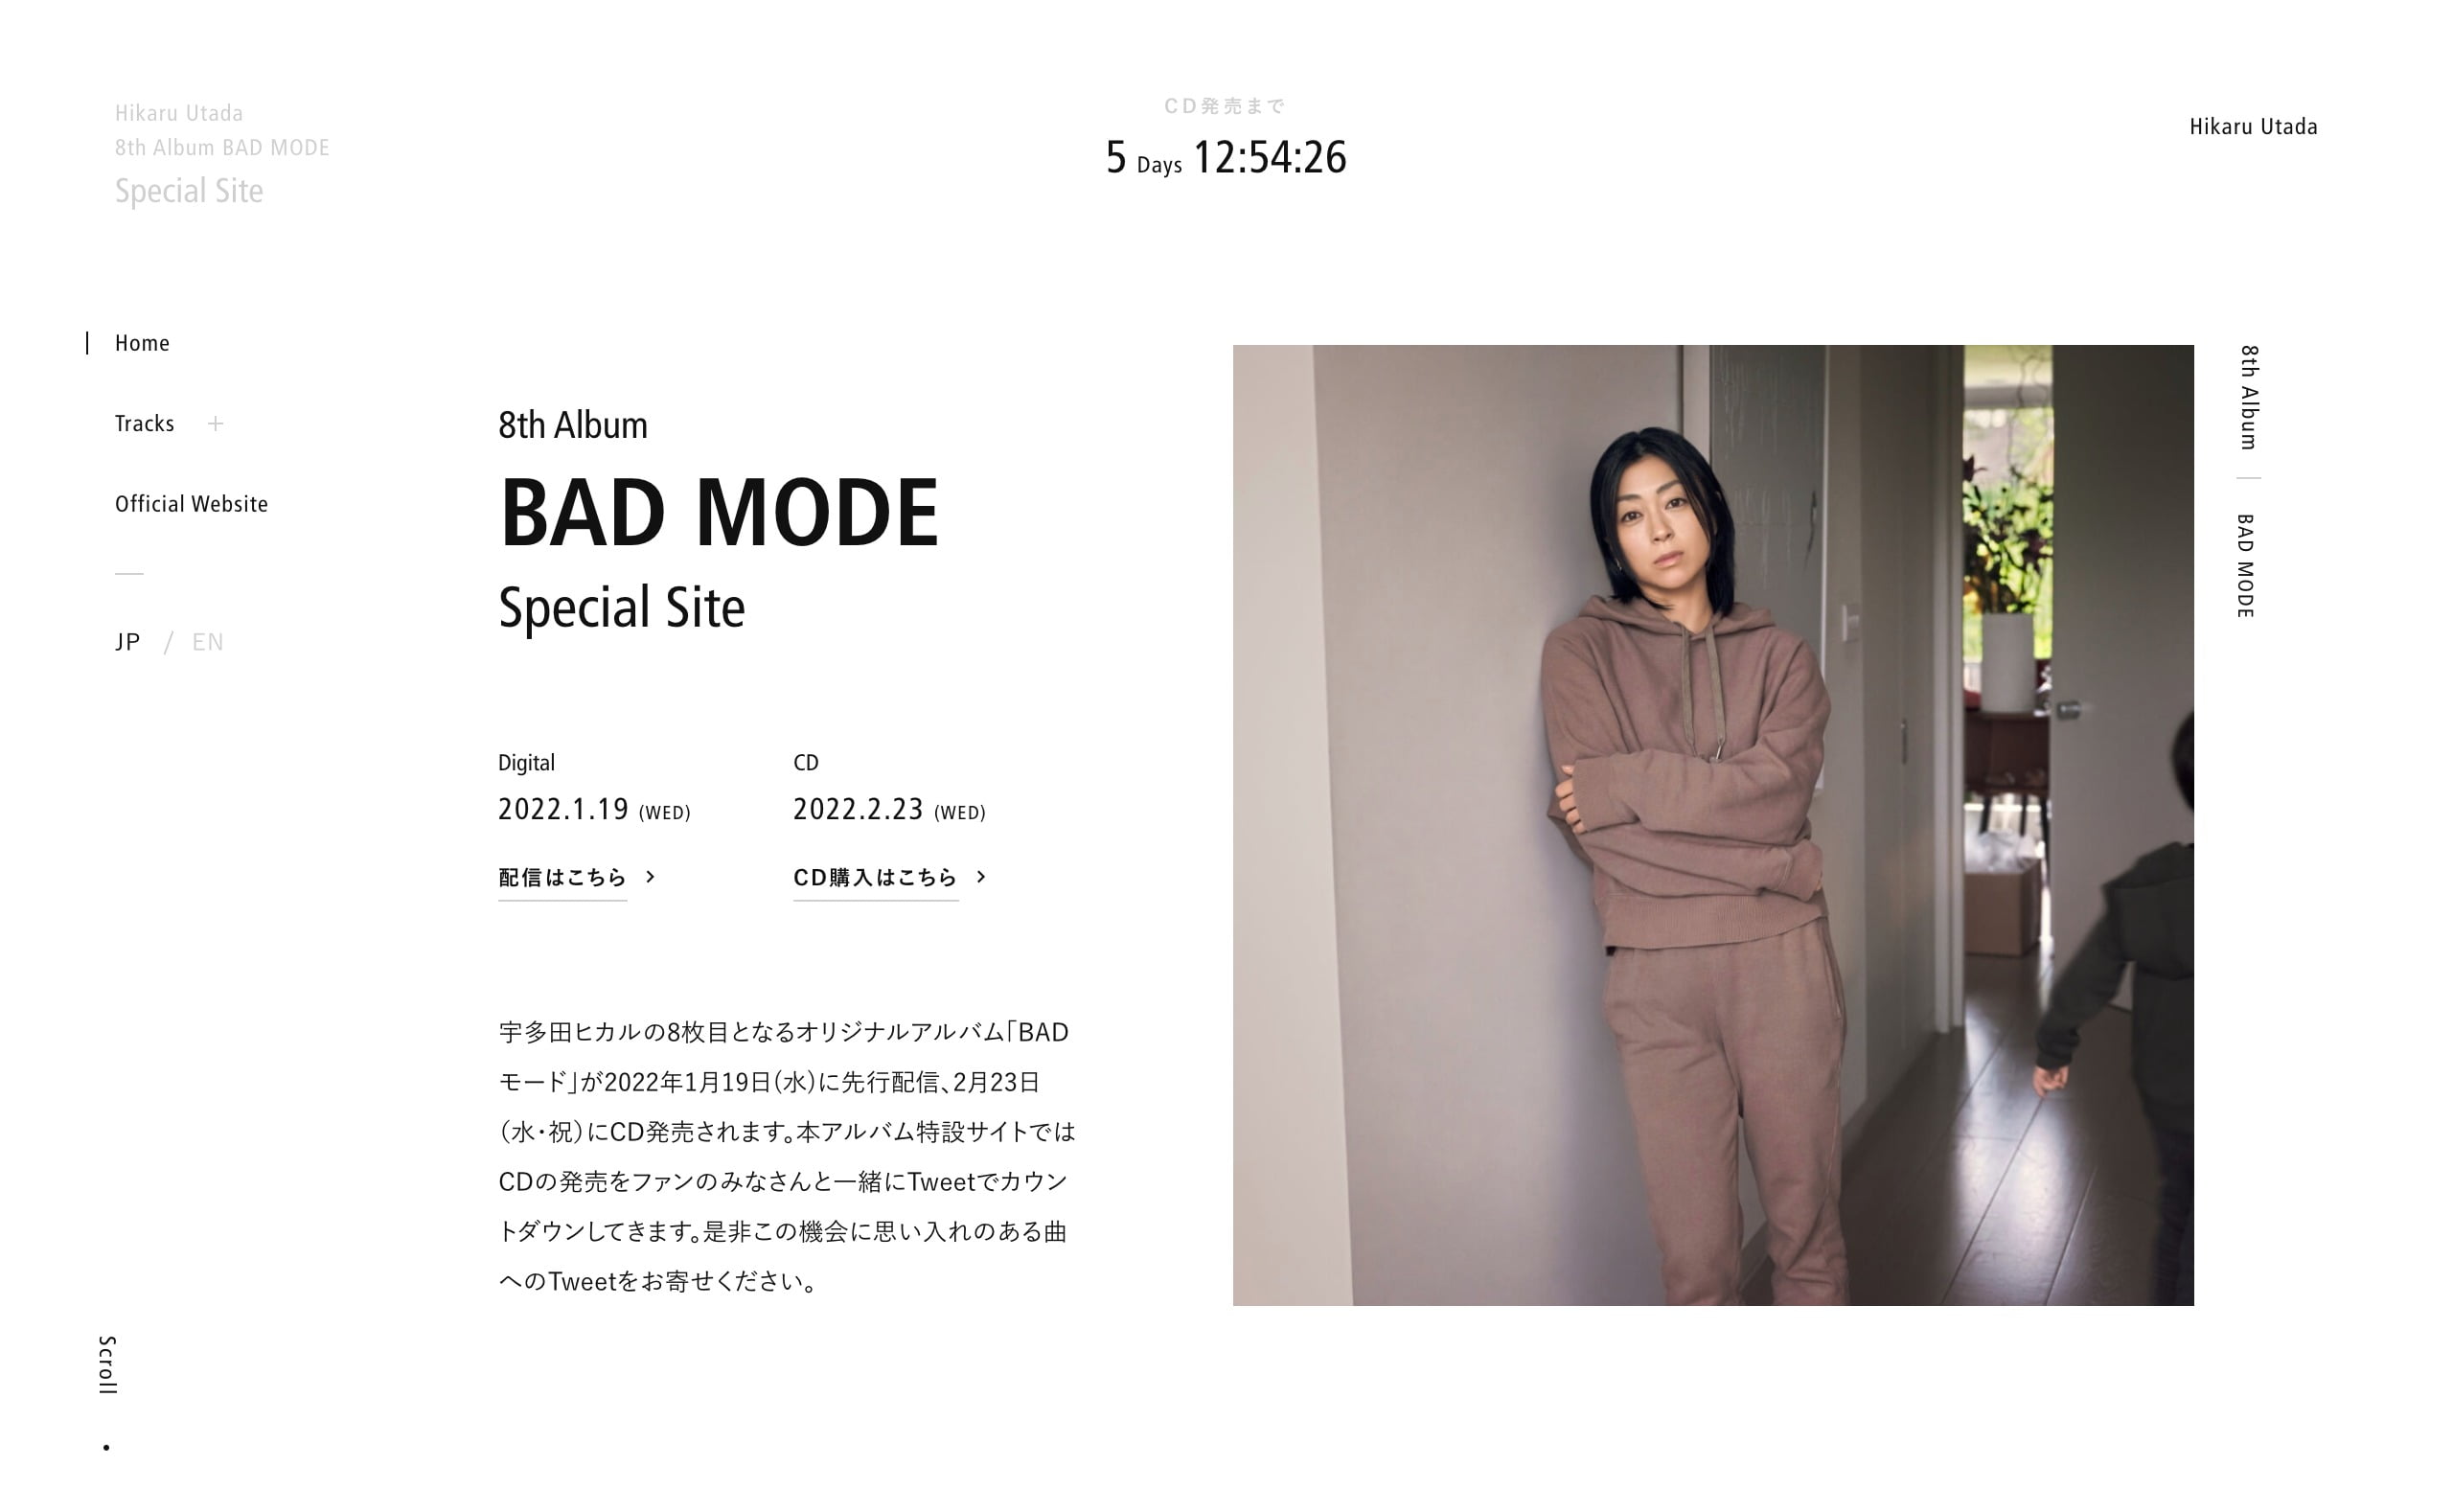 宇多田ヒカル 8th Album「BADモード」特設サイト | MUSIC WEB CLIPS - バンド・アーティスト・音楽関連のWEBデザイン  ギャラリーサイト